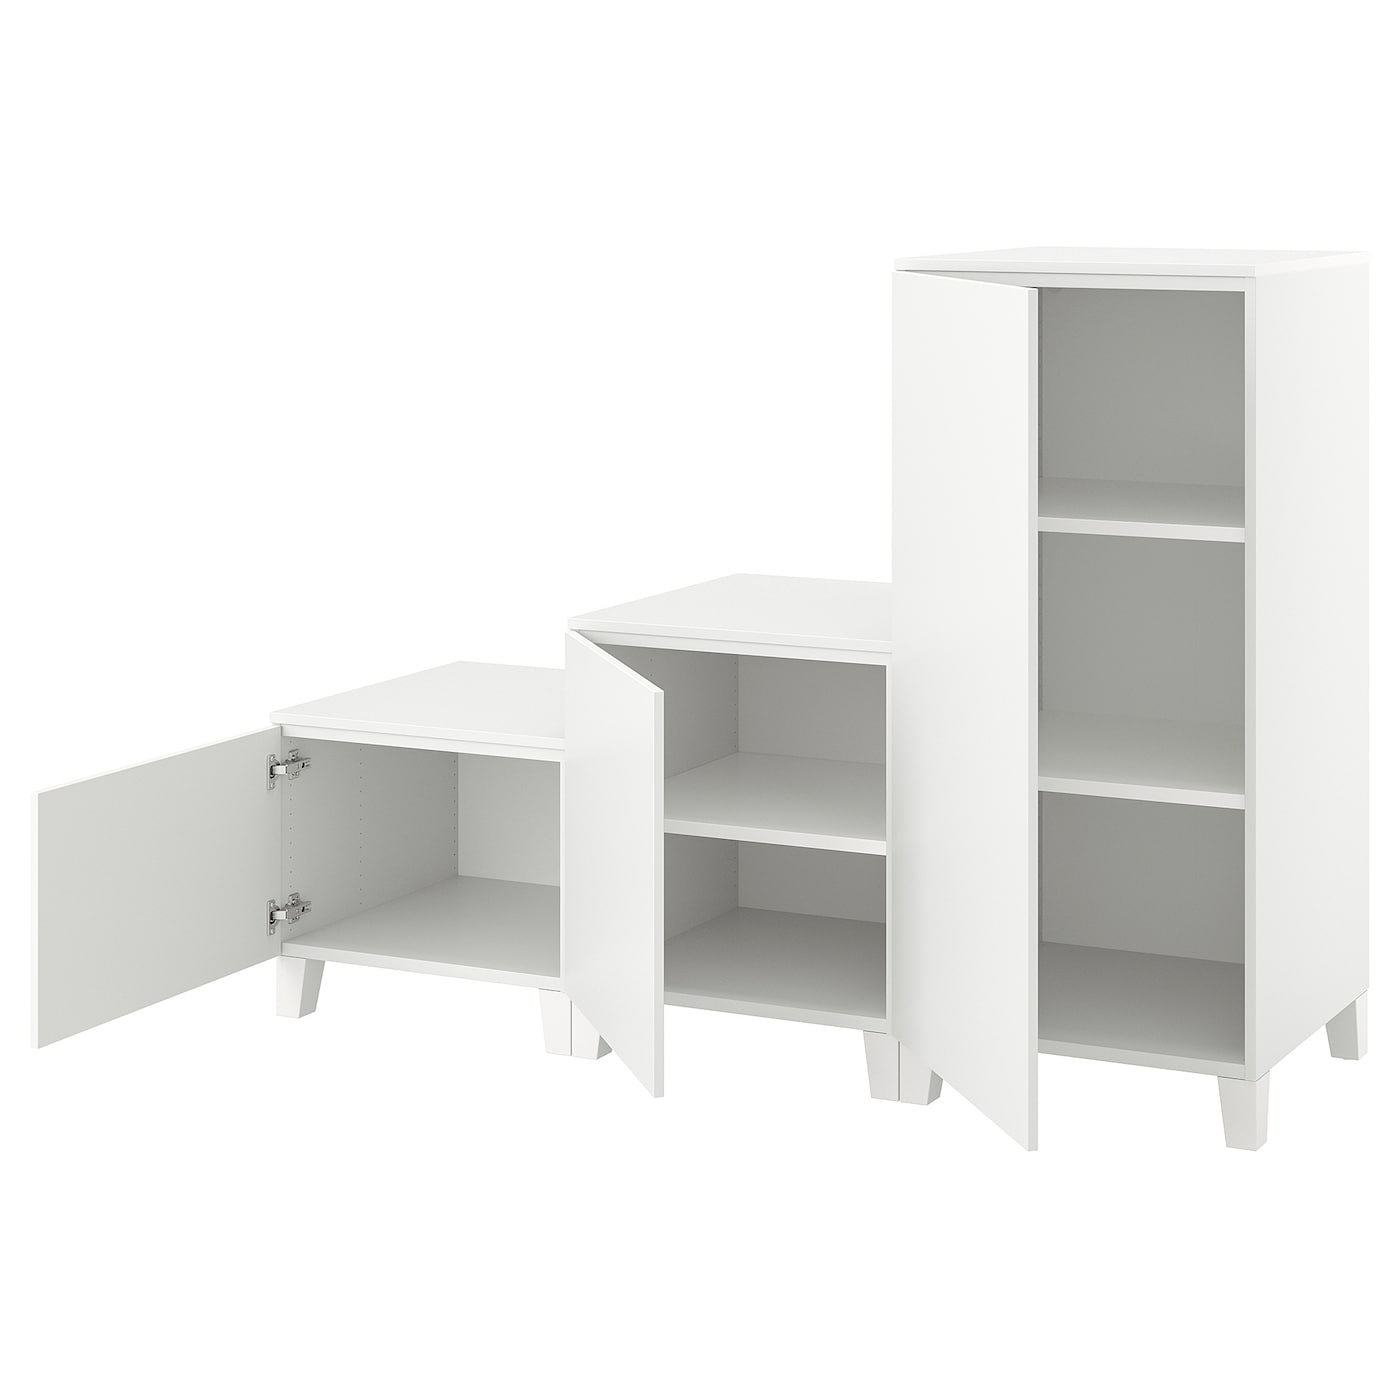 Платяной шкаф - PLATSA/IKEA/ ПЛАТСА ИКЕА,180x57x133 см, белый